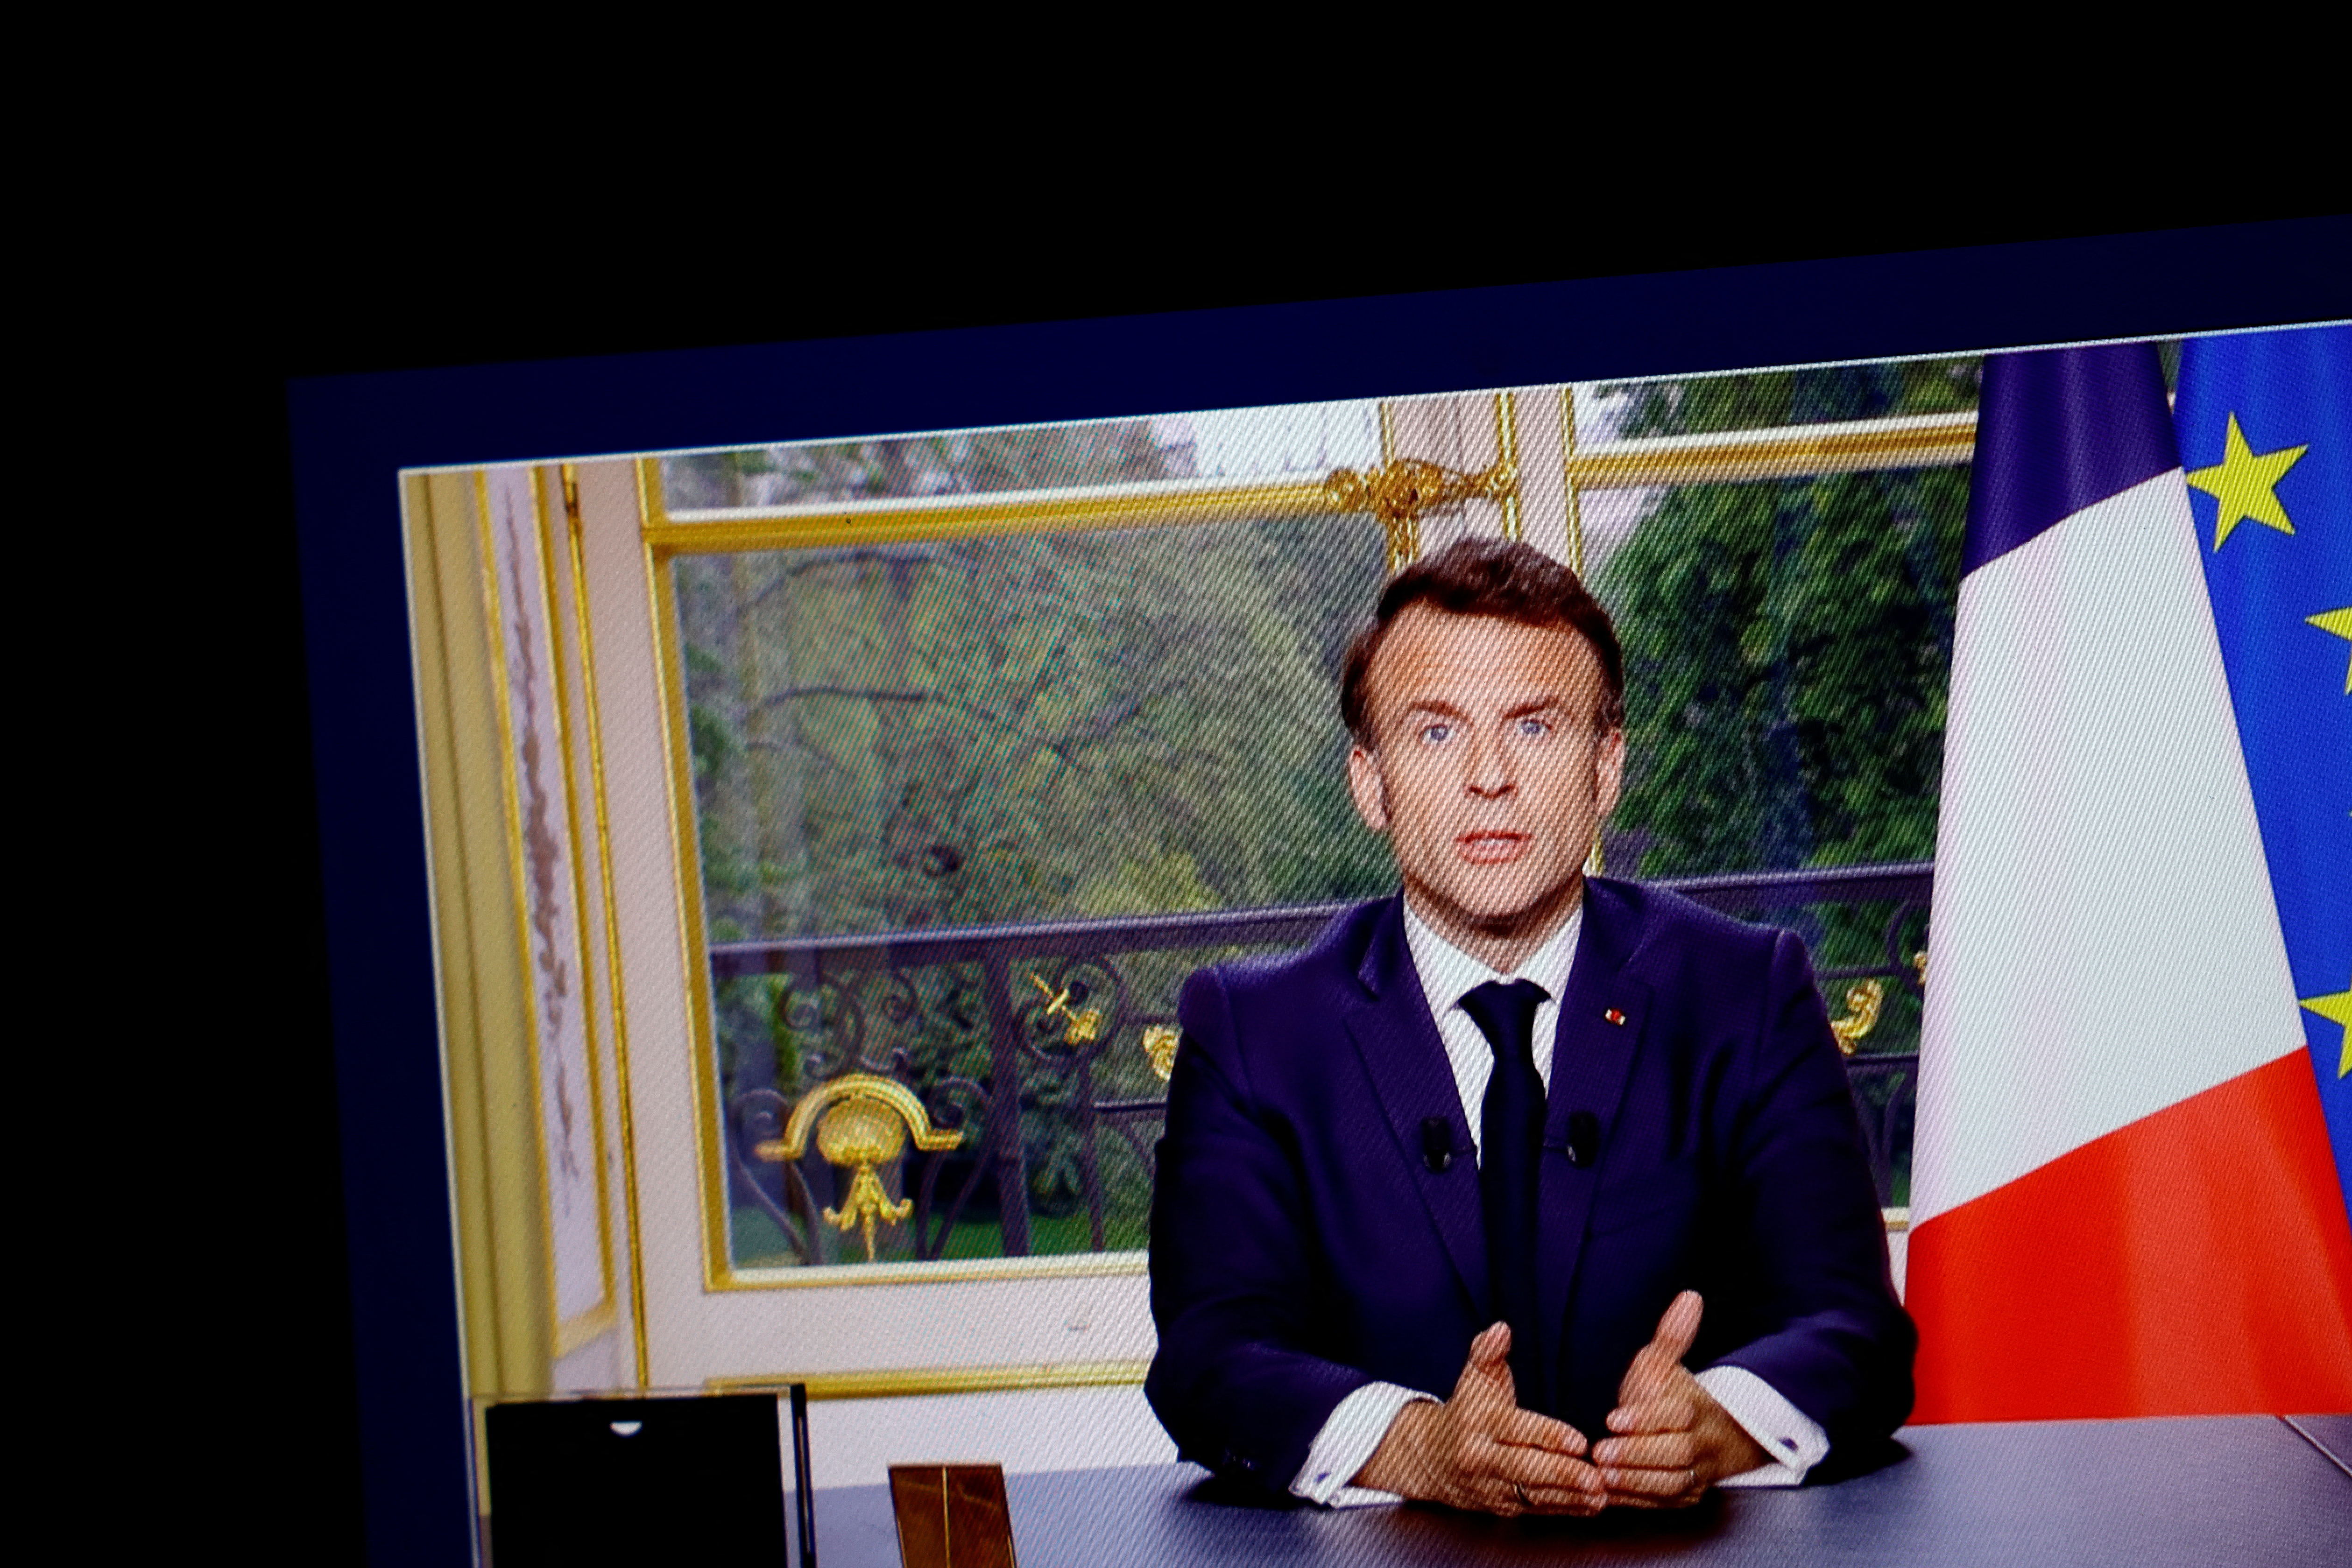 Baisses d'impôts: Bercy face au casse-tête de la promesse de Macron